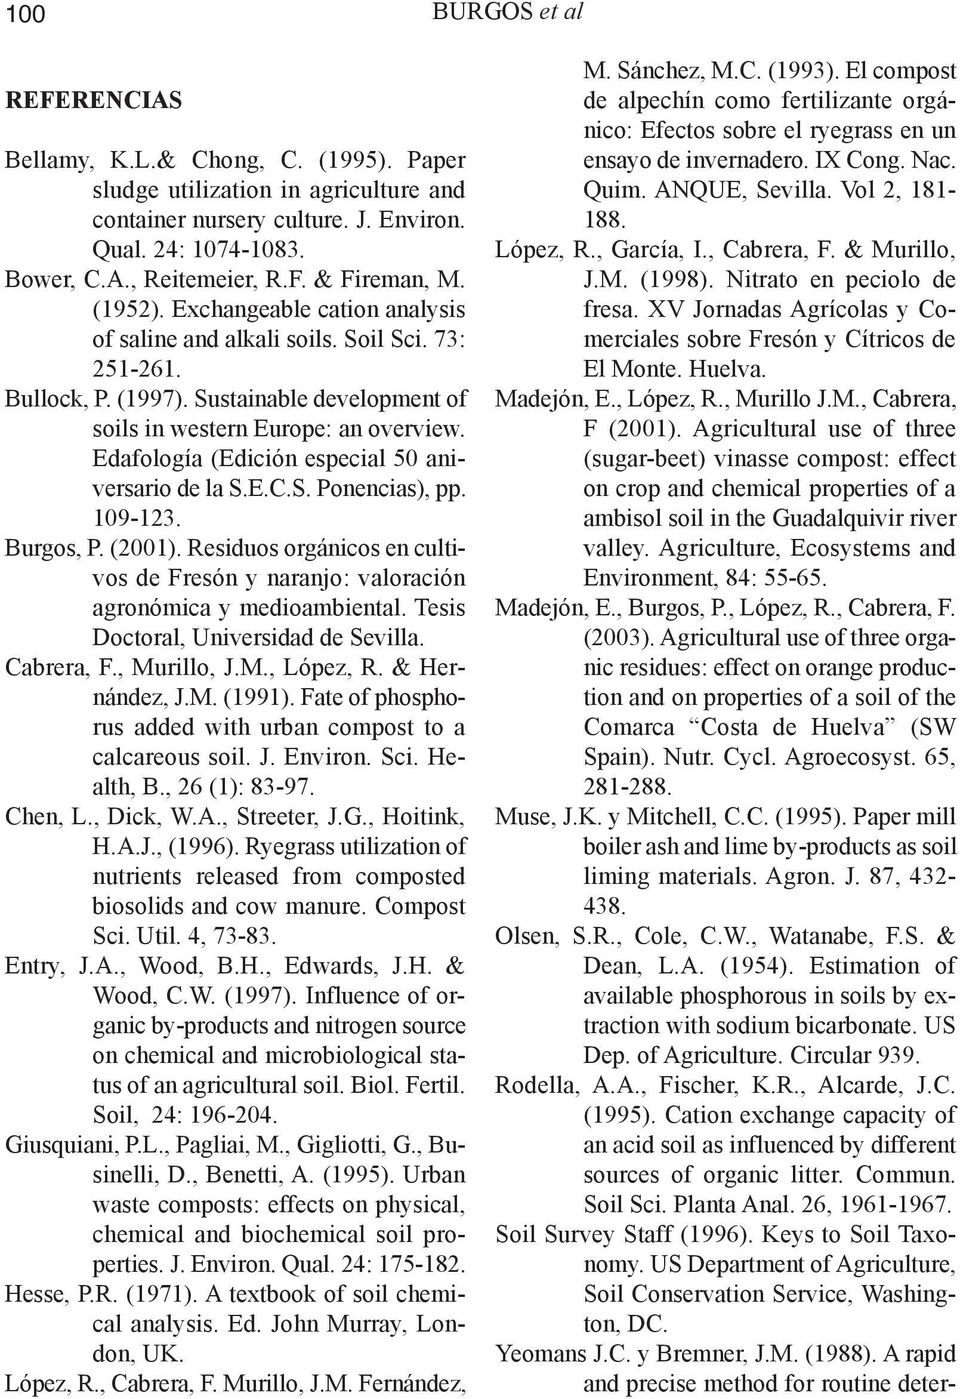 Edafología (Edición especial 50 aniversario de la S.E.C.S. Ponencias), pp. 109-123. Burgos, P. (2001). Residuos orgánicos en cultivos de Fresón y naranjo: valoración agronómica y medioambiental.